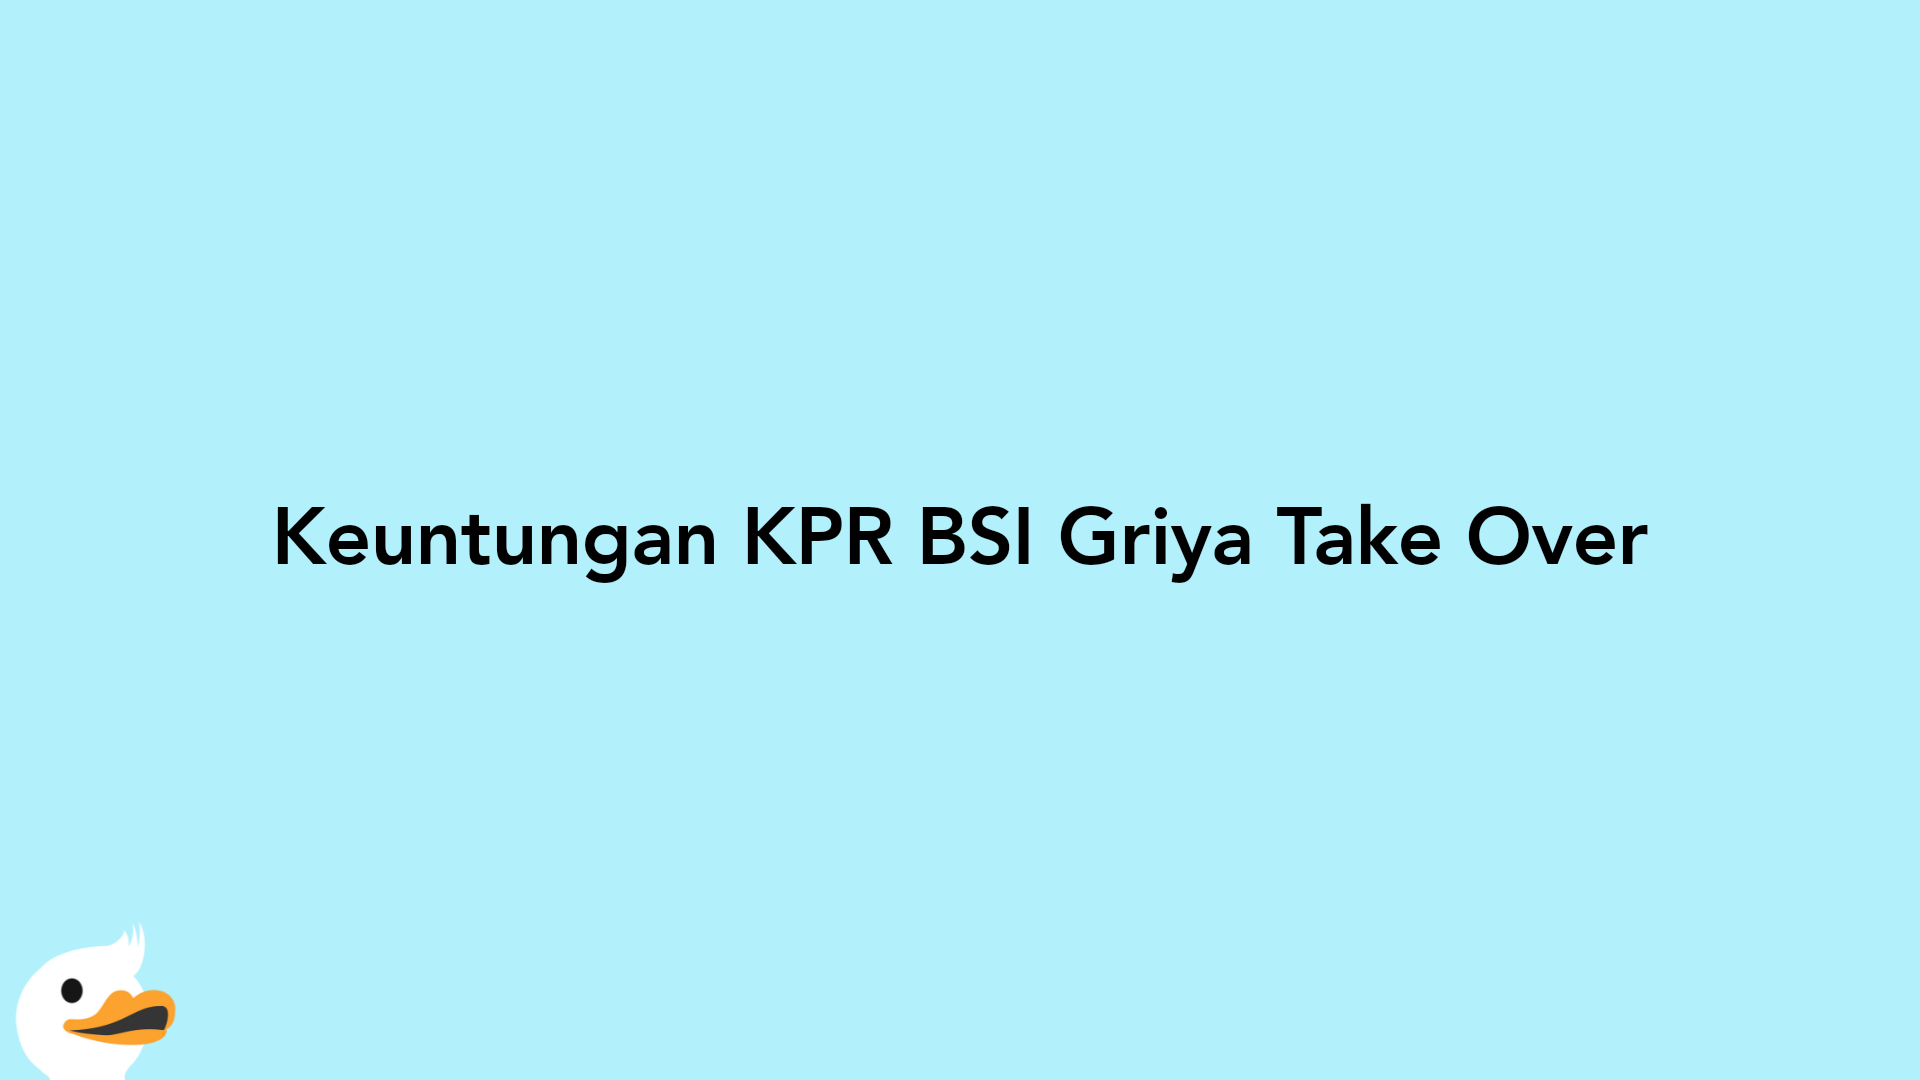 Keuntungan KPR BSI Griya Take Over